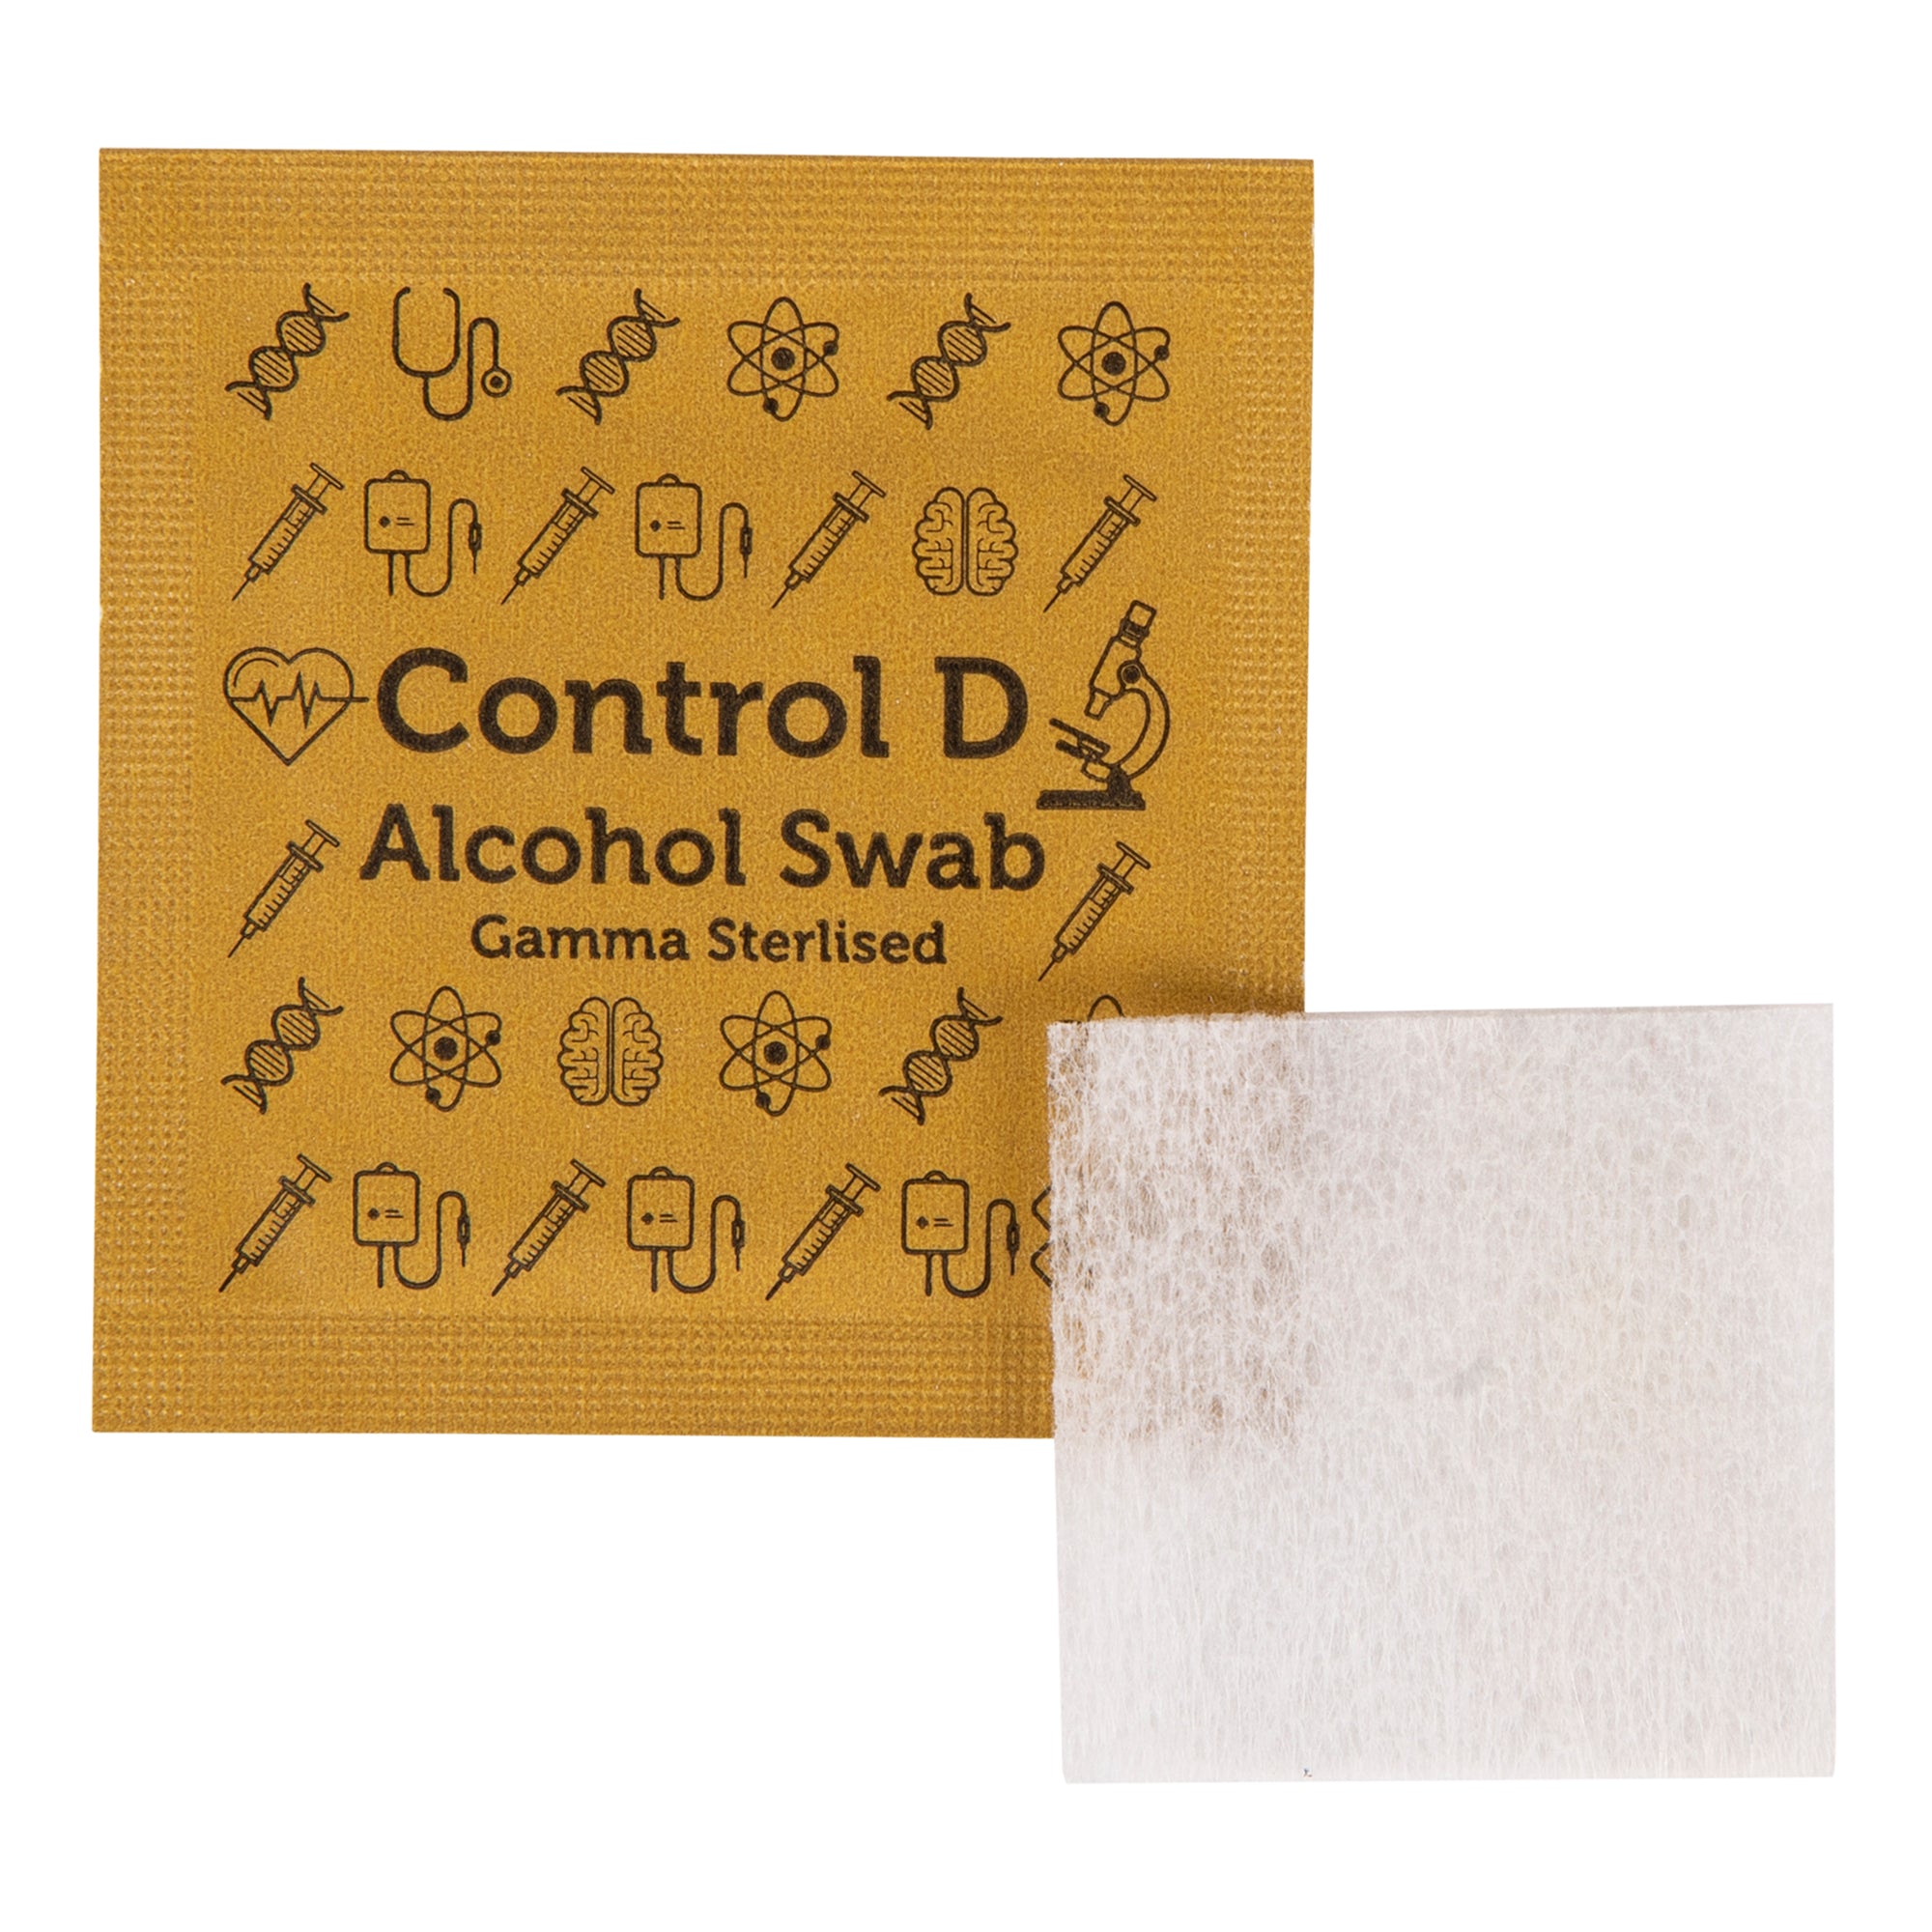 Control D 100 Alcohol Swabs